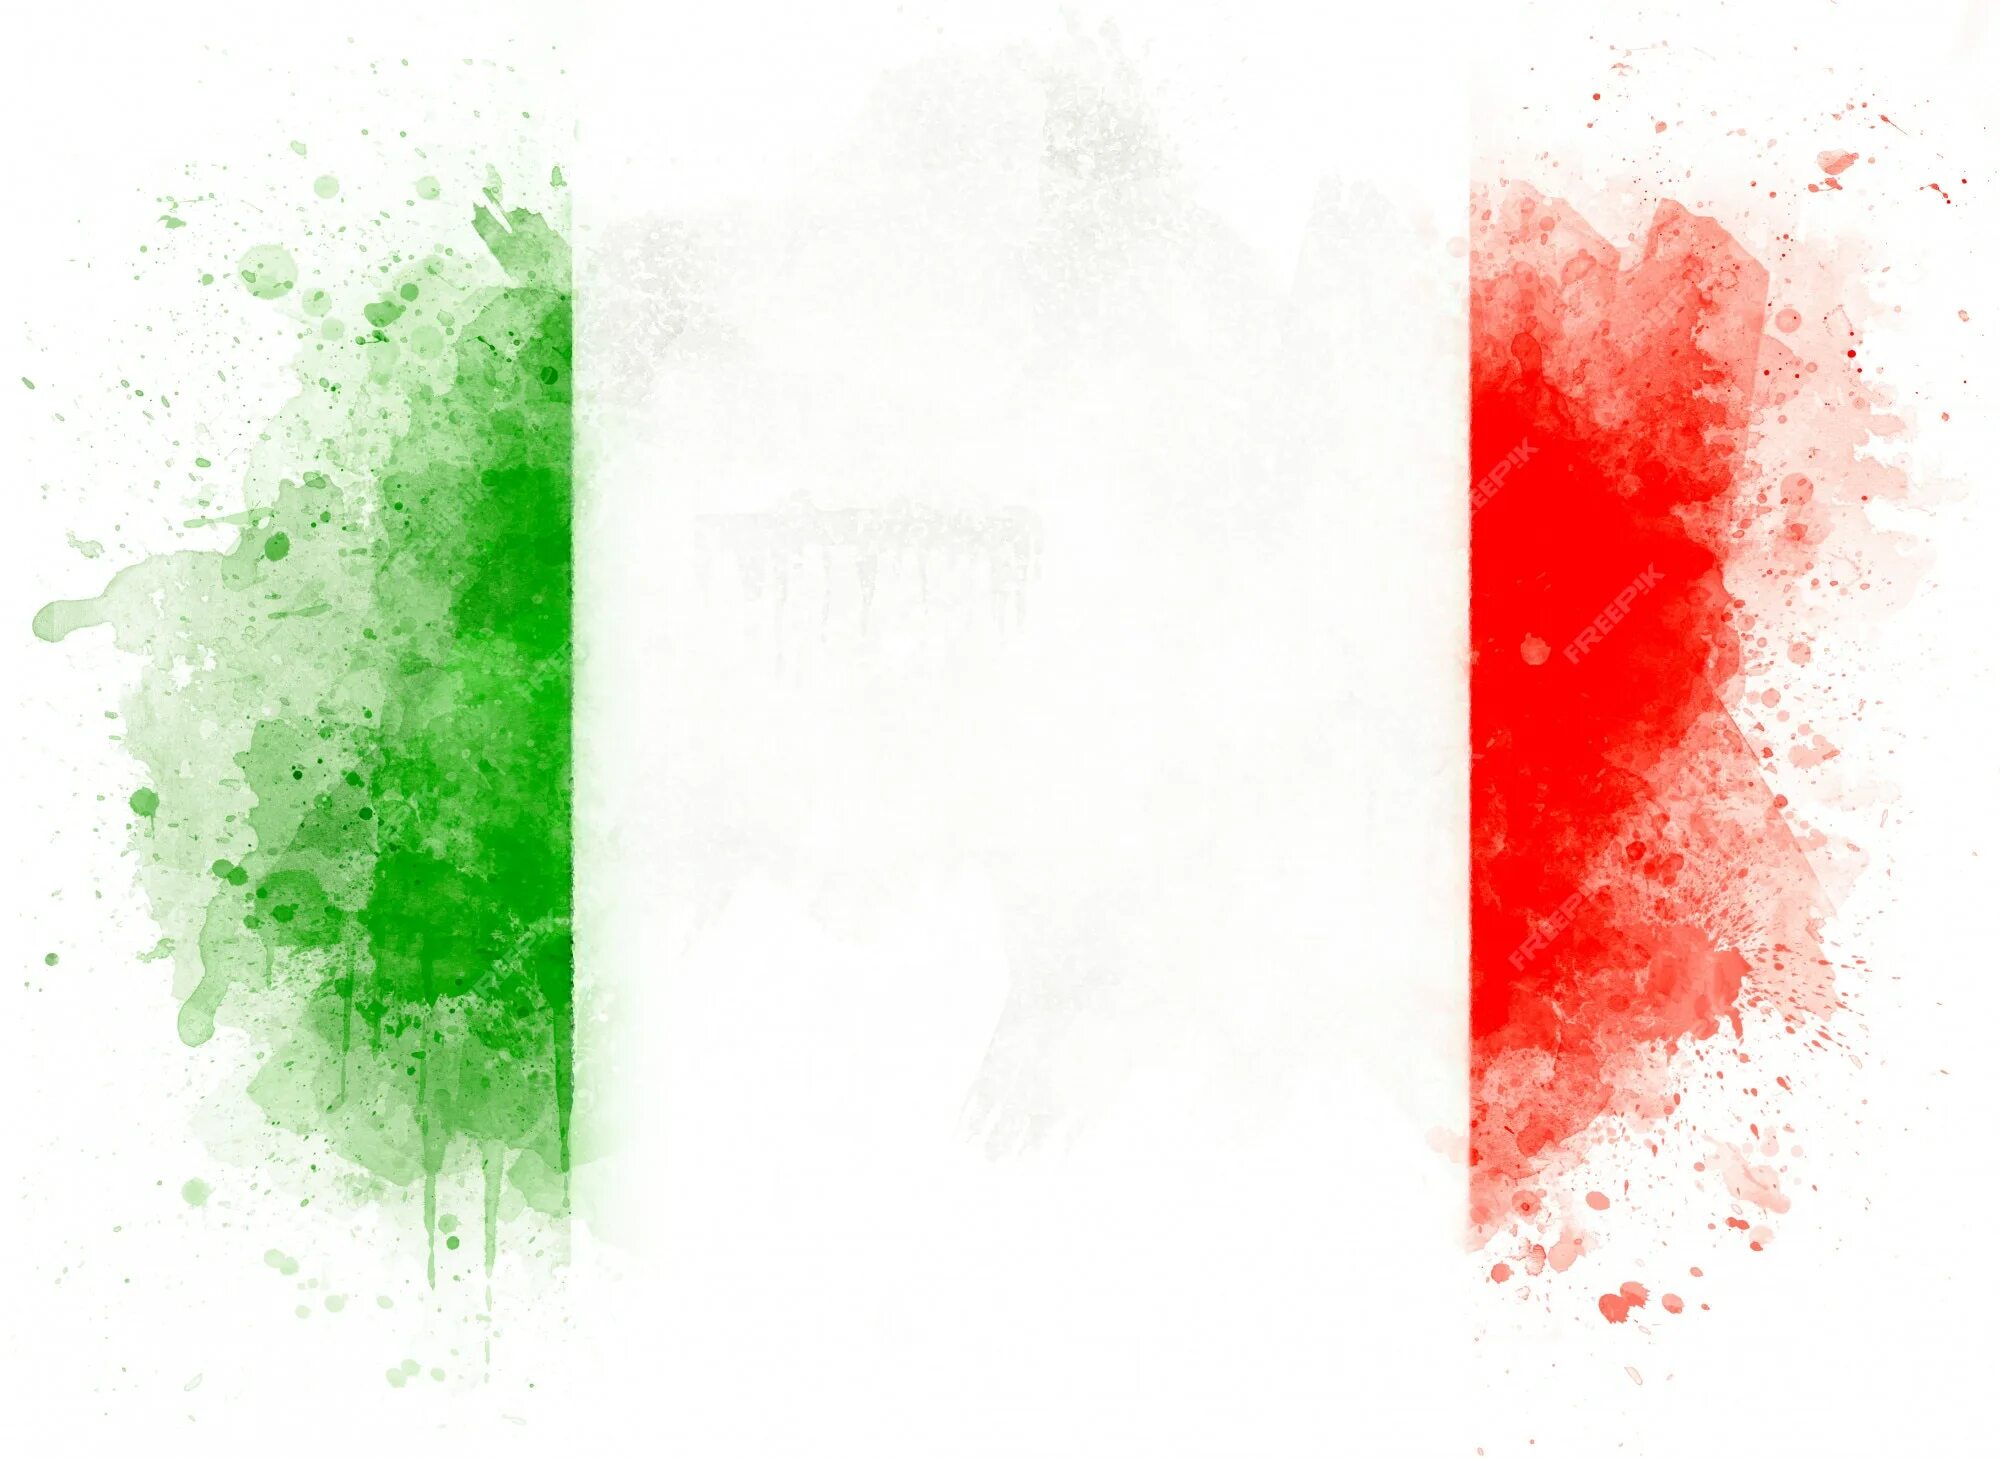 Код флага италии. Флаг Италии. Флаг Италии акварель. Цвета итальянского флага. Флаг Италии на белом фоне.